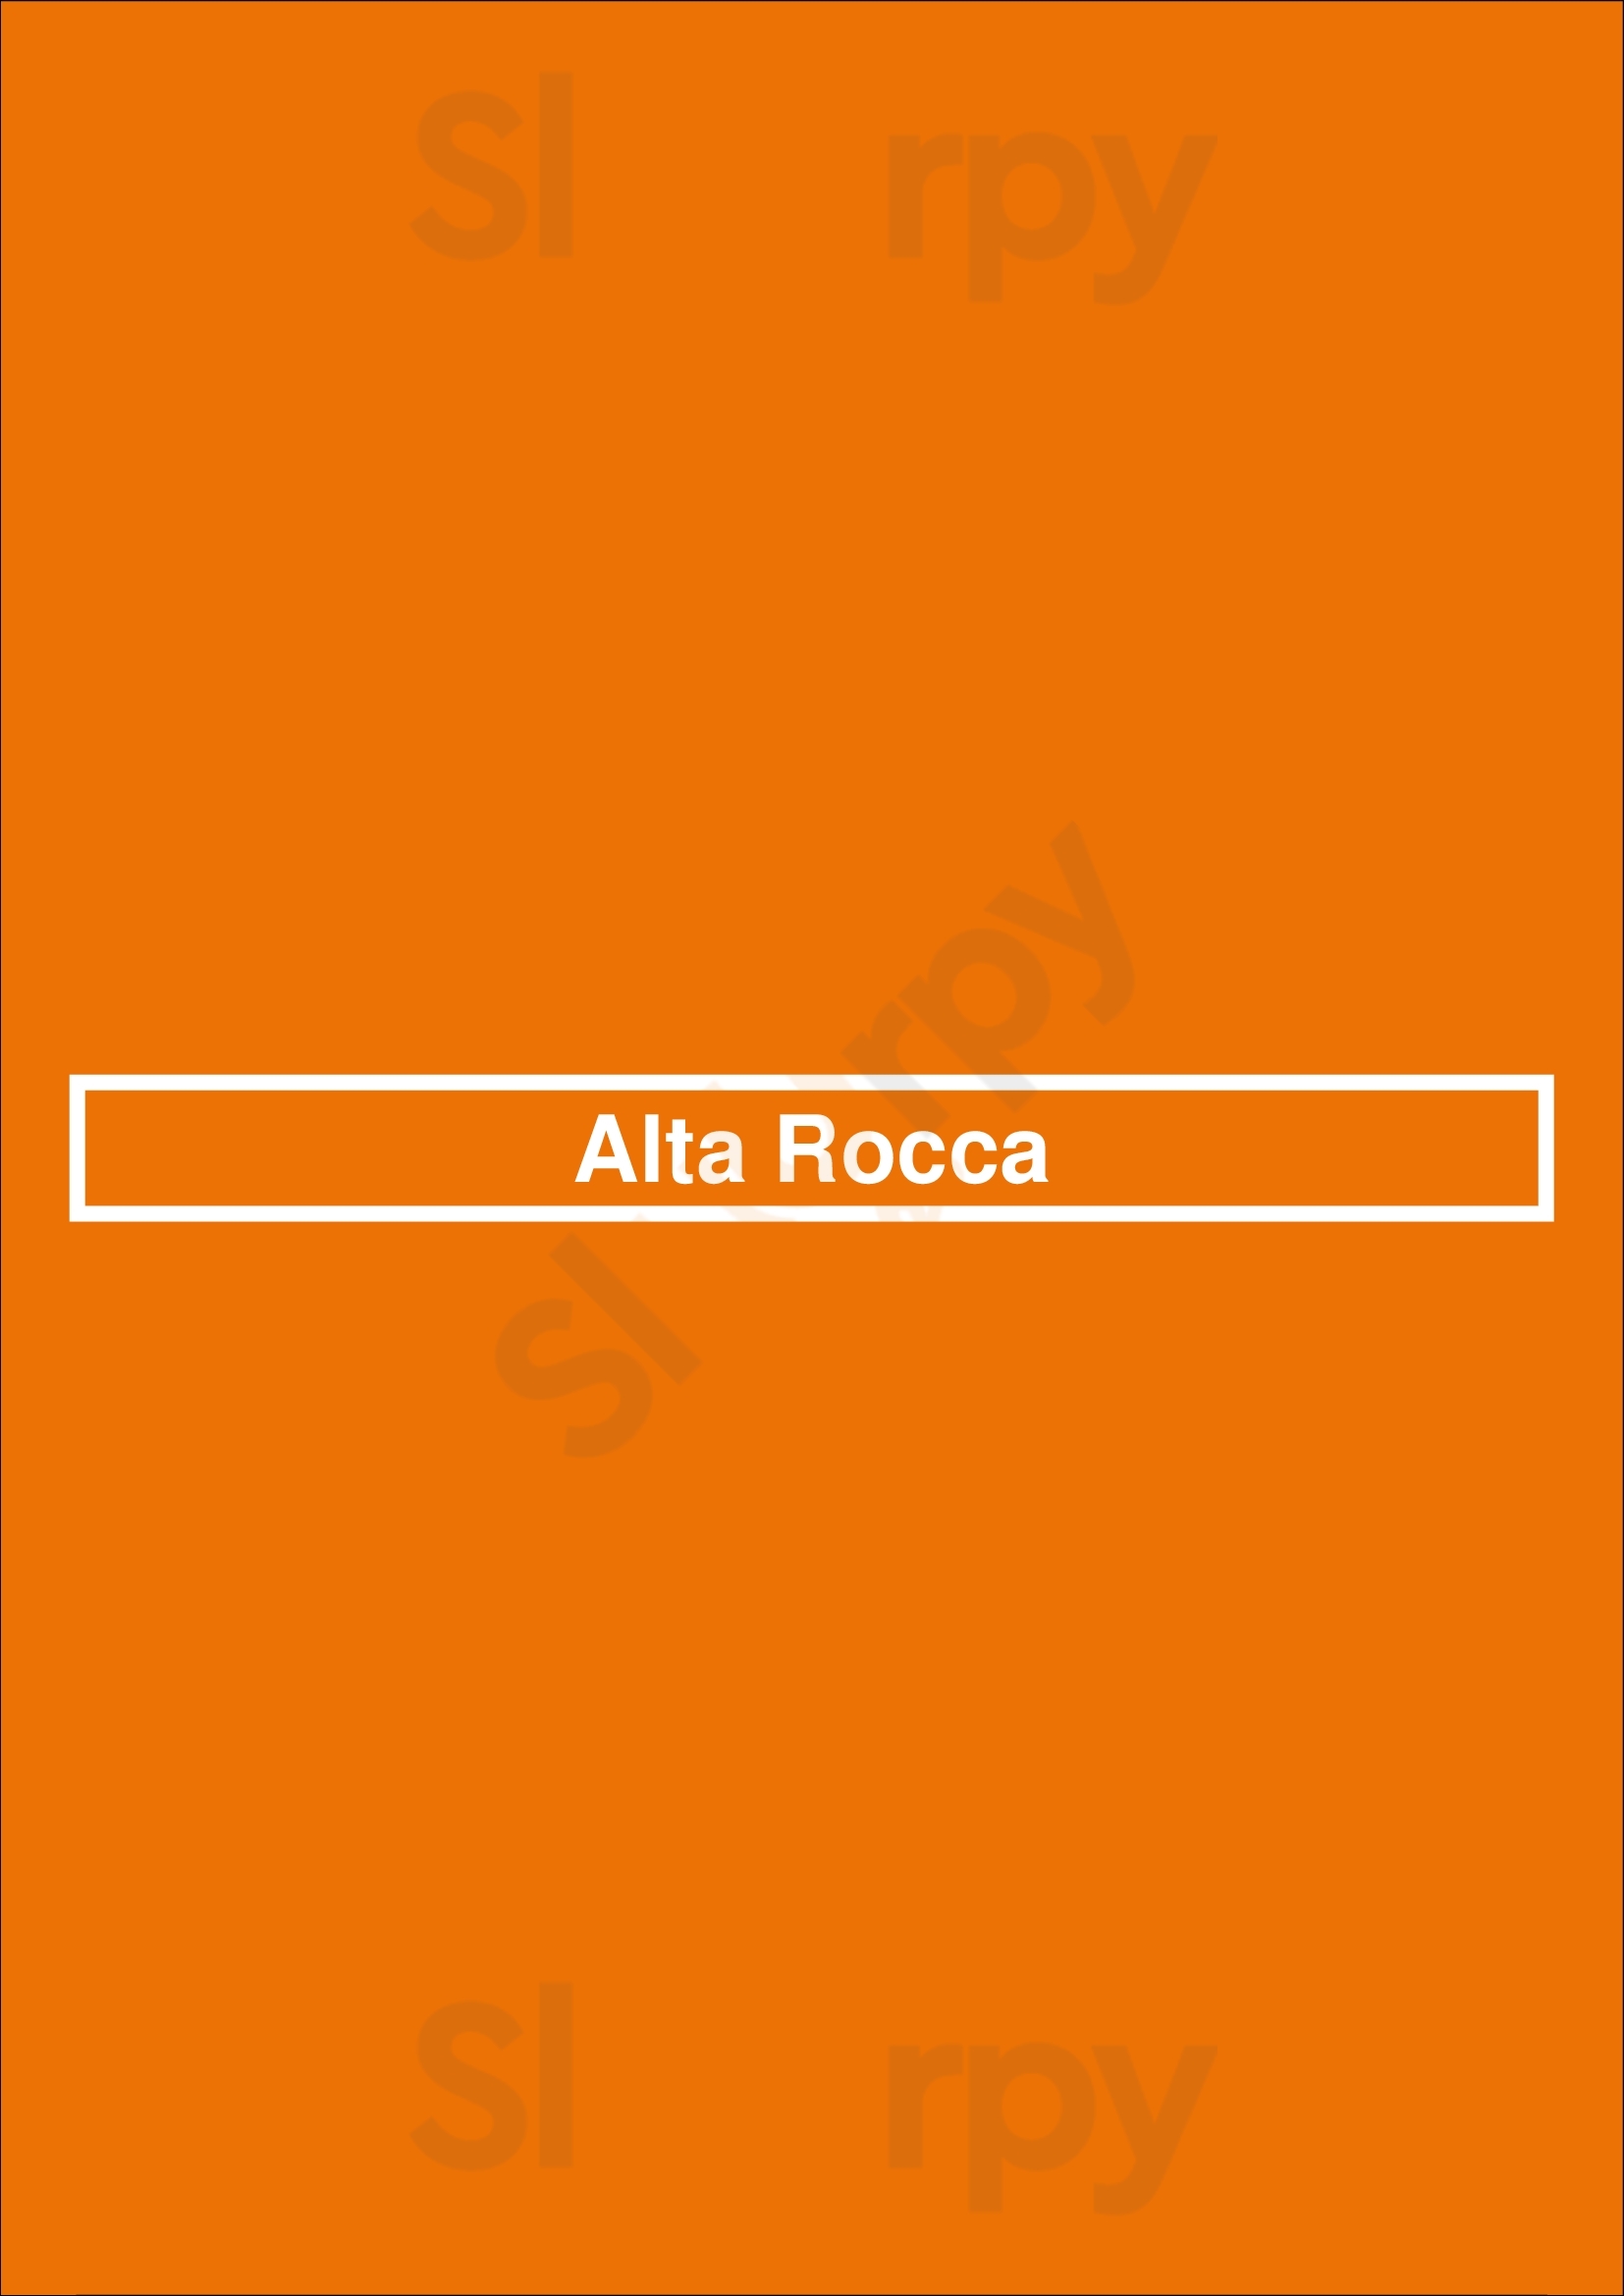 Alta Rocca Paris Menu - 1